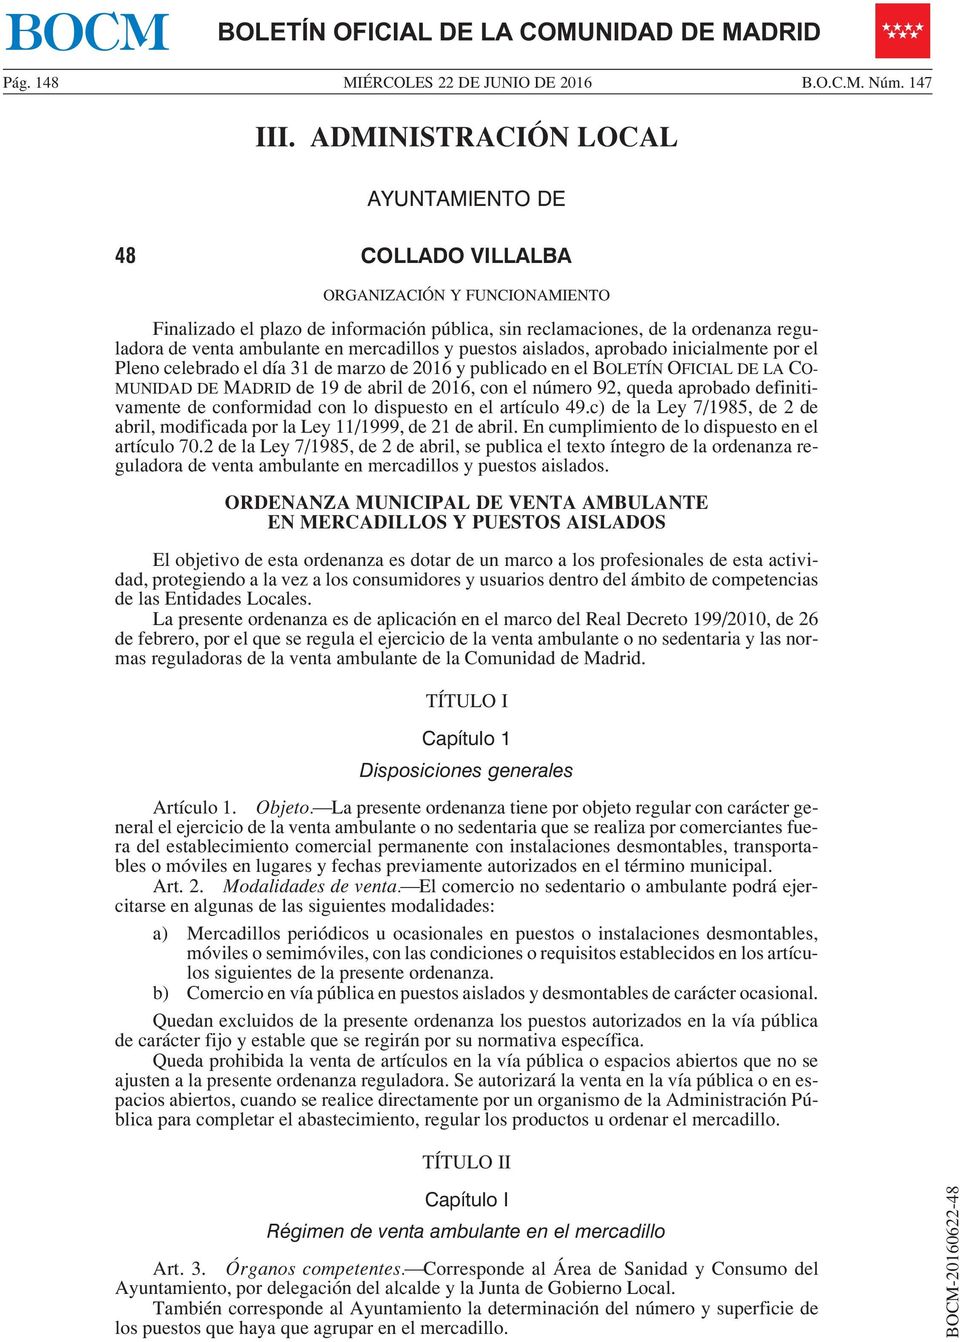 mercadillos y puestos aislados, aprobado inicialmente por el Pleno celebrado el día 31 de marzo de 2016 y publicado en el BOLETÍN OFICIAL DE LA CO- MUNIDAD DE MADRID de 19 de abril de 2016, con el